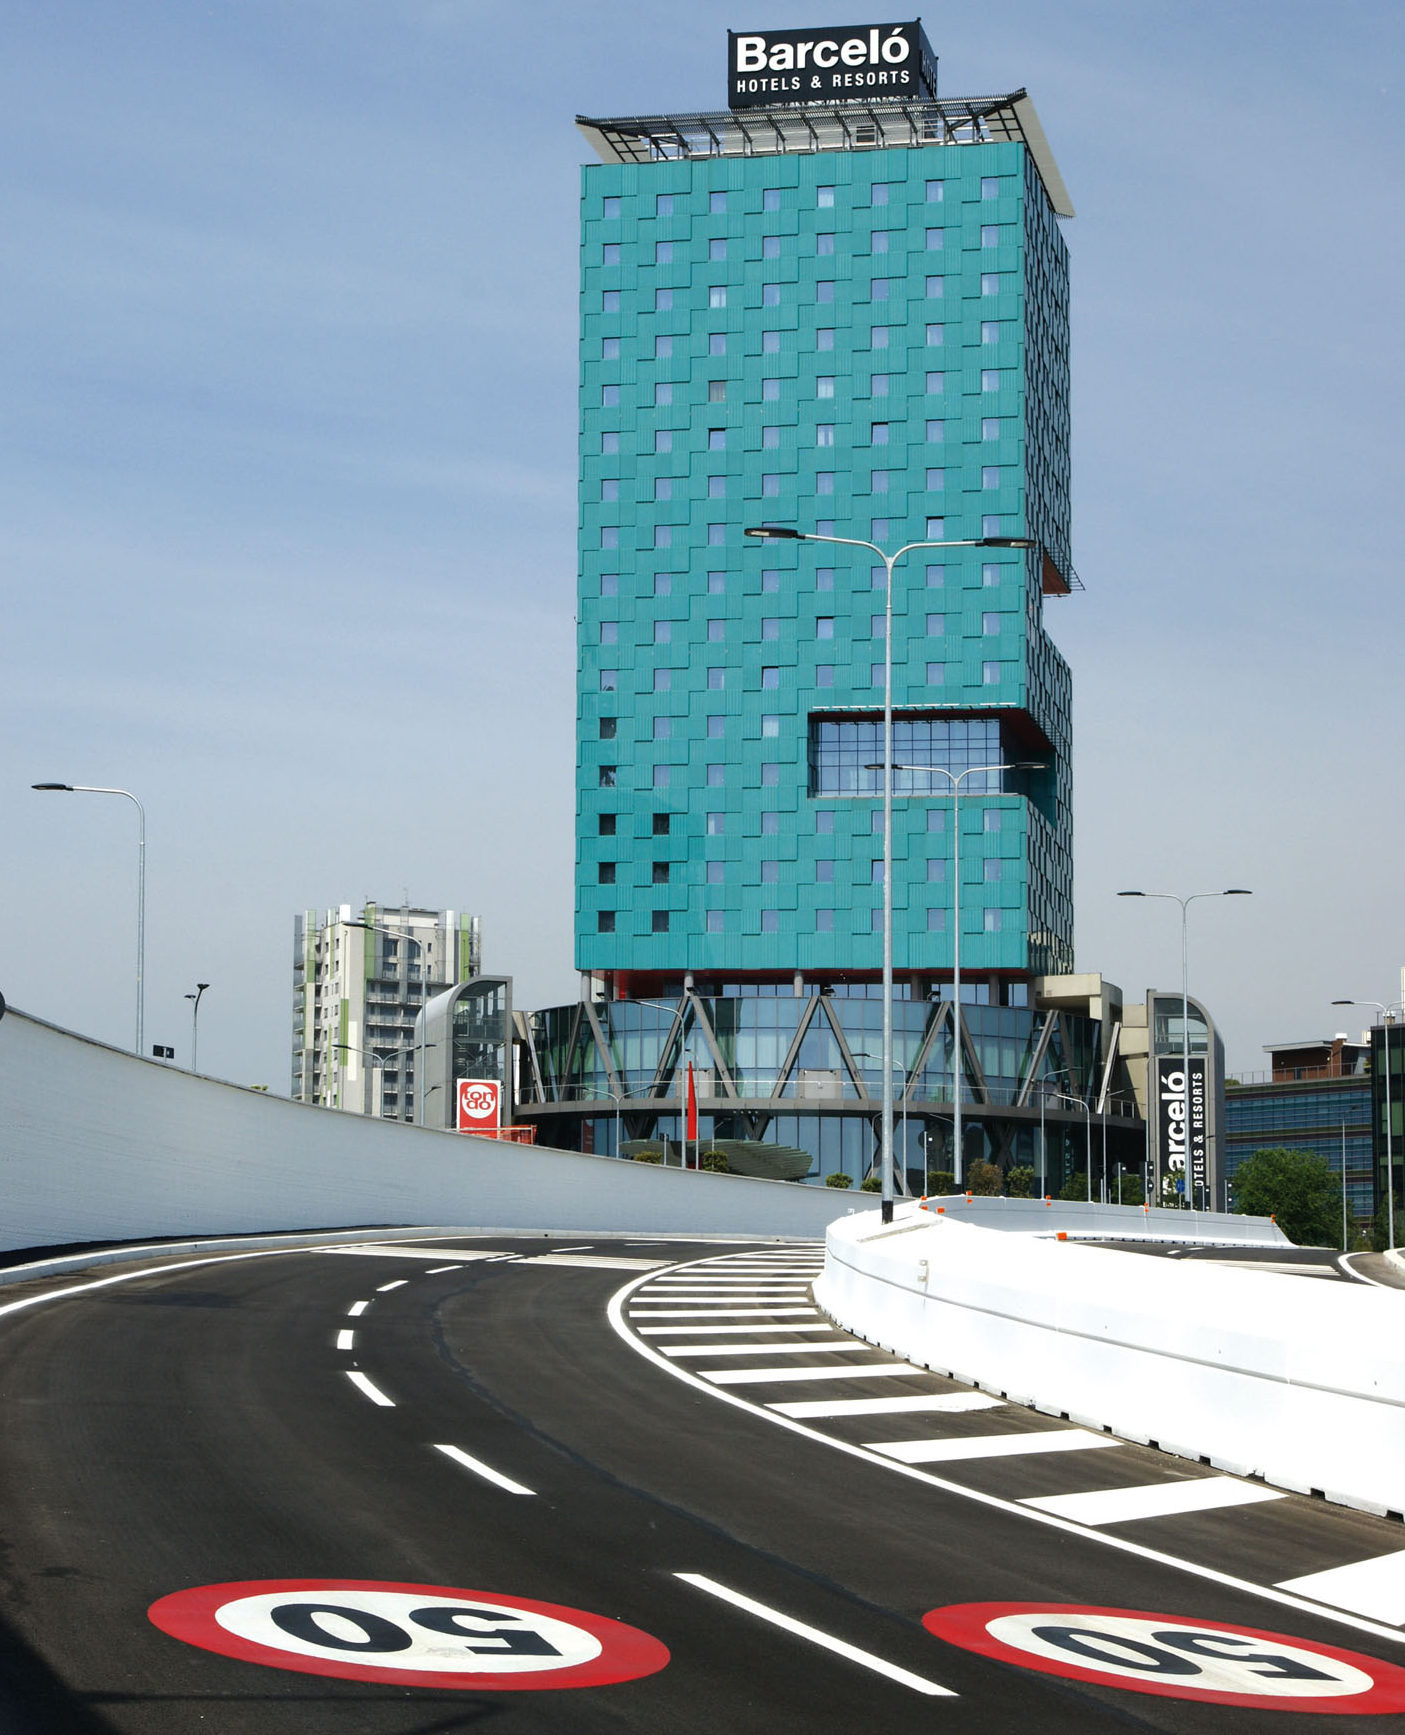 Lunga 2,2 km, la Zara-Expo ha una struttura a doppia carreggiata con due corsie per senso di marcia.